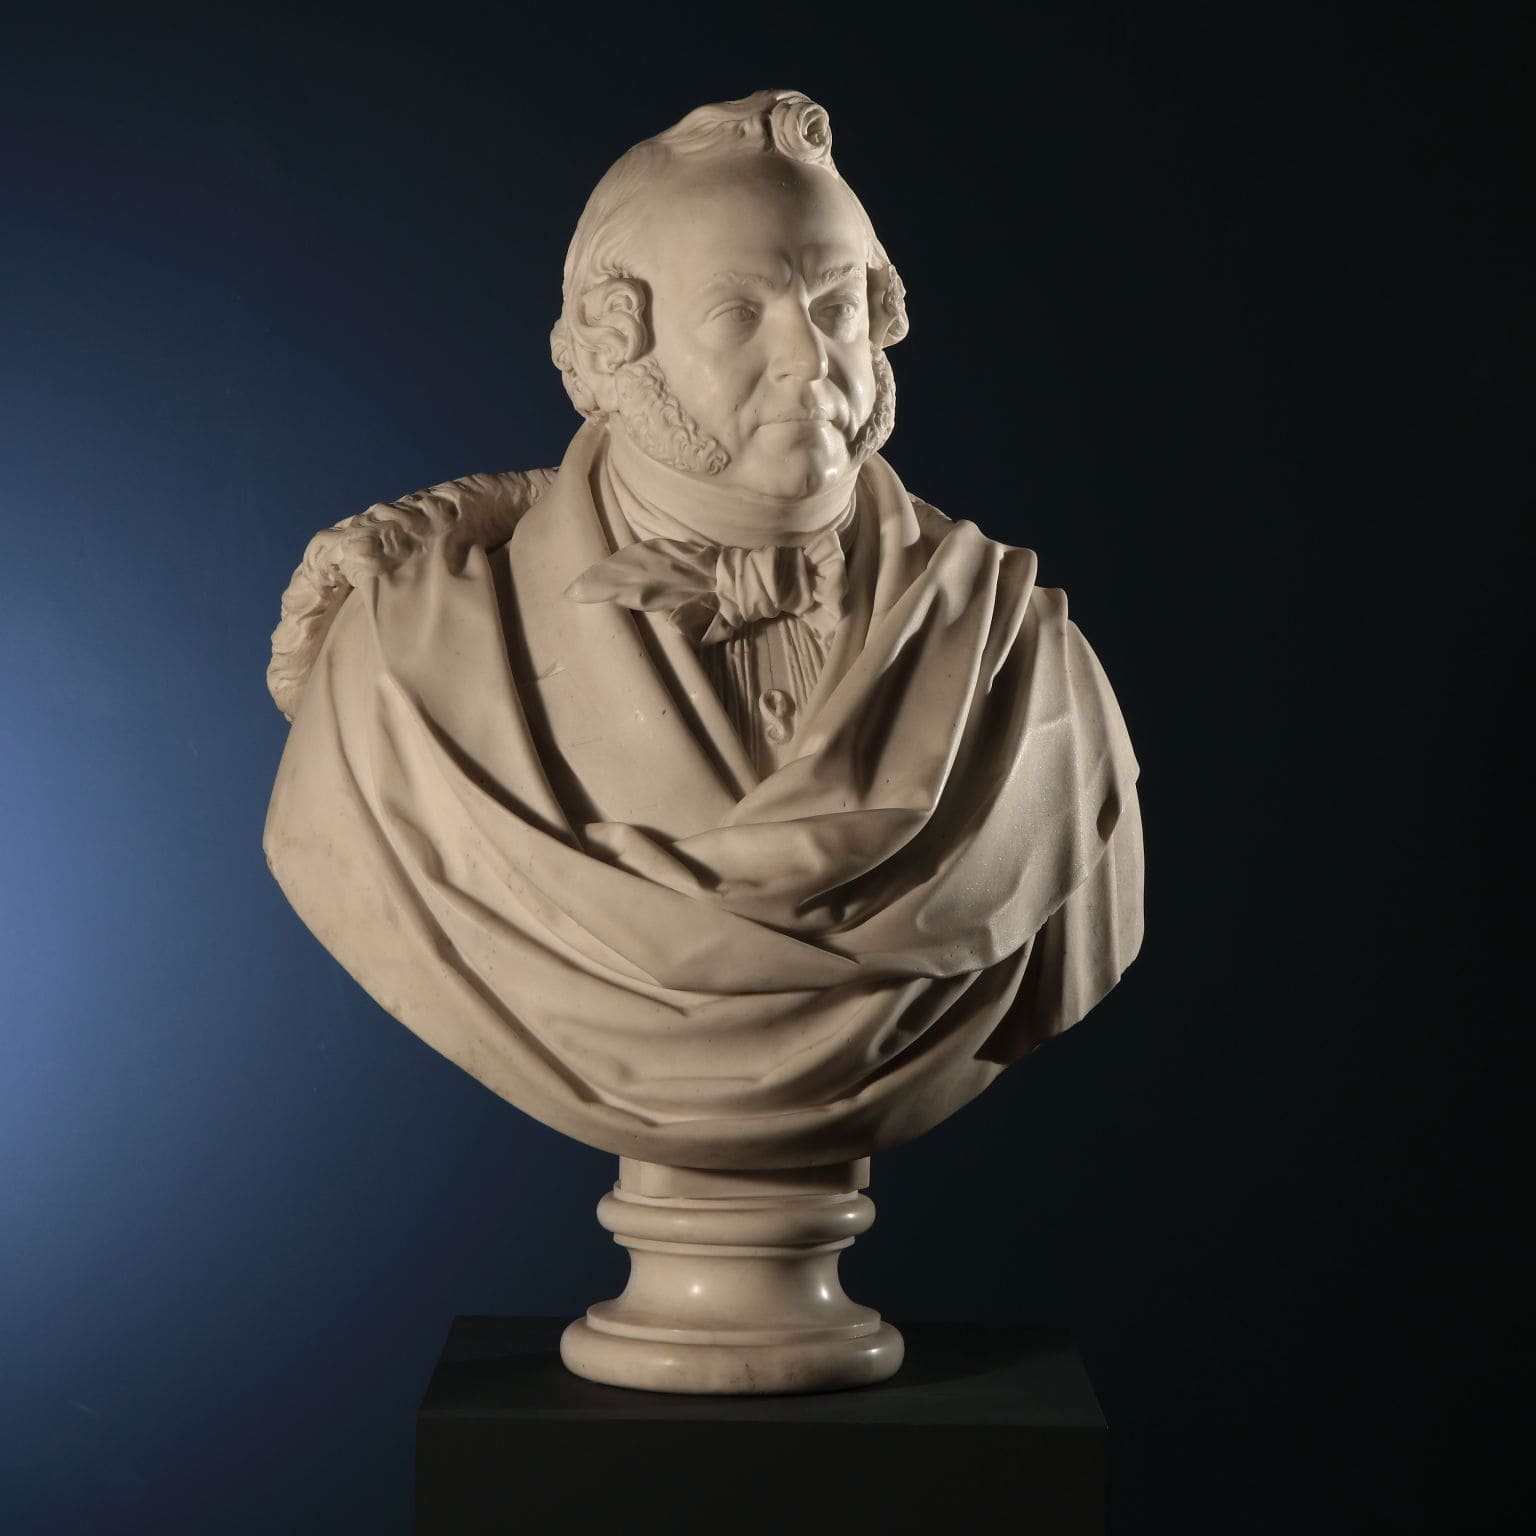 Male bust, Giovanni Antonio Emanuelli, 1838